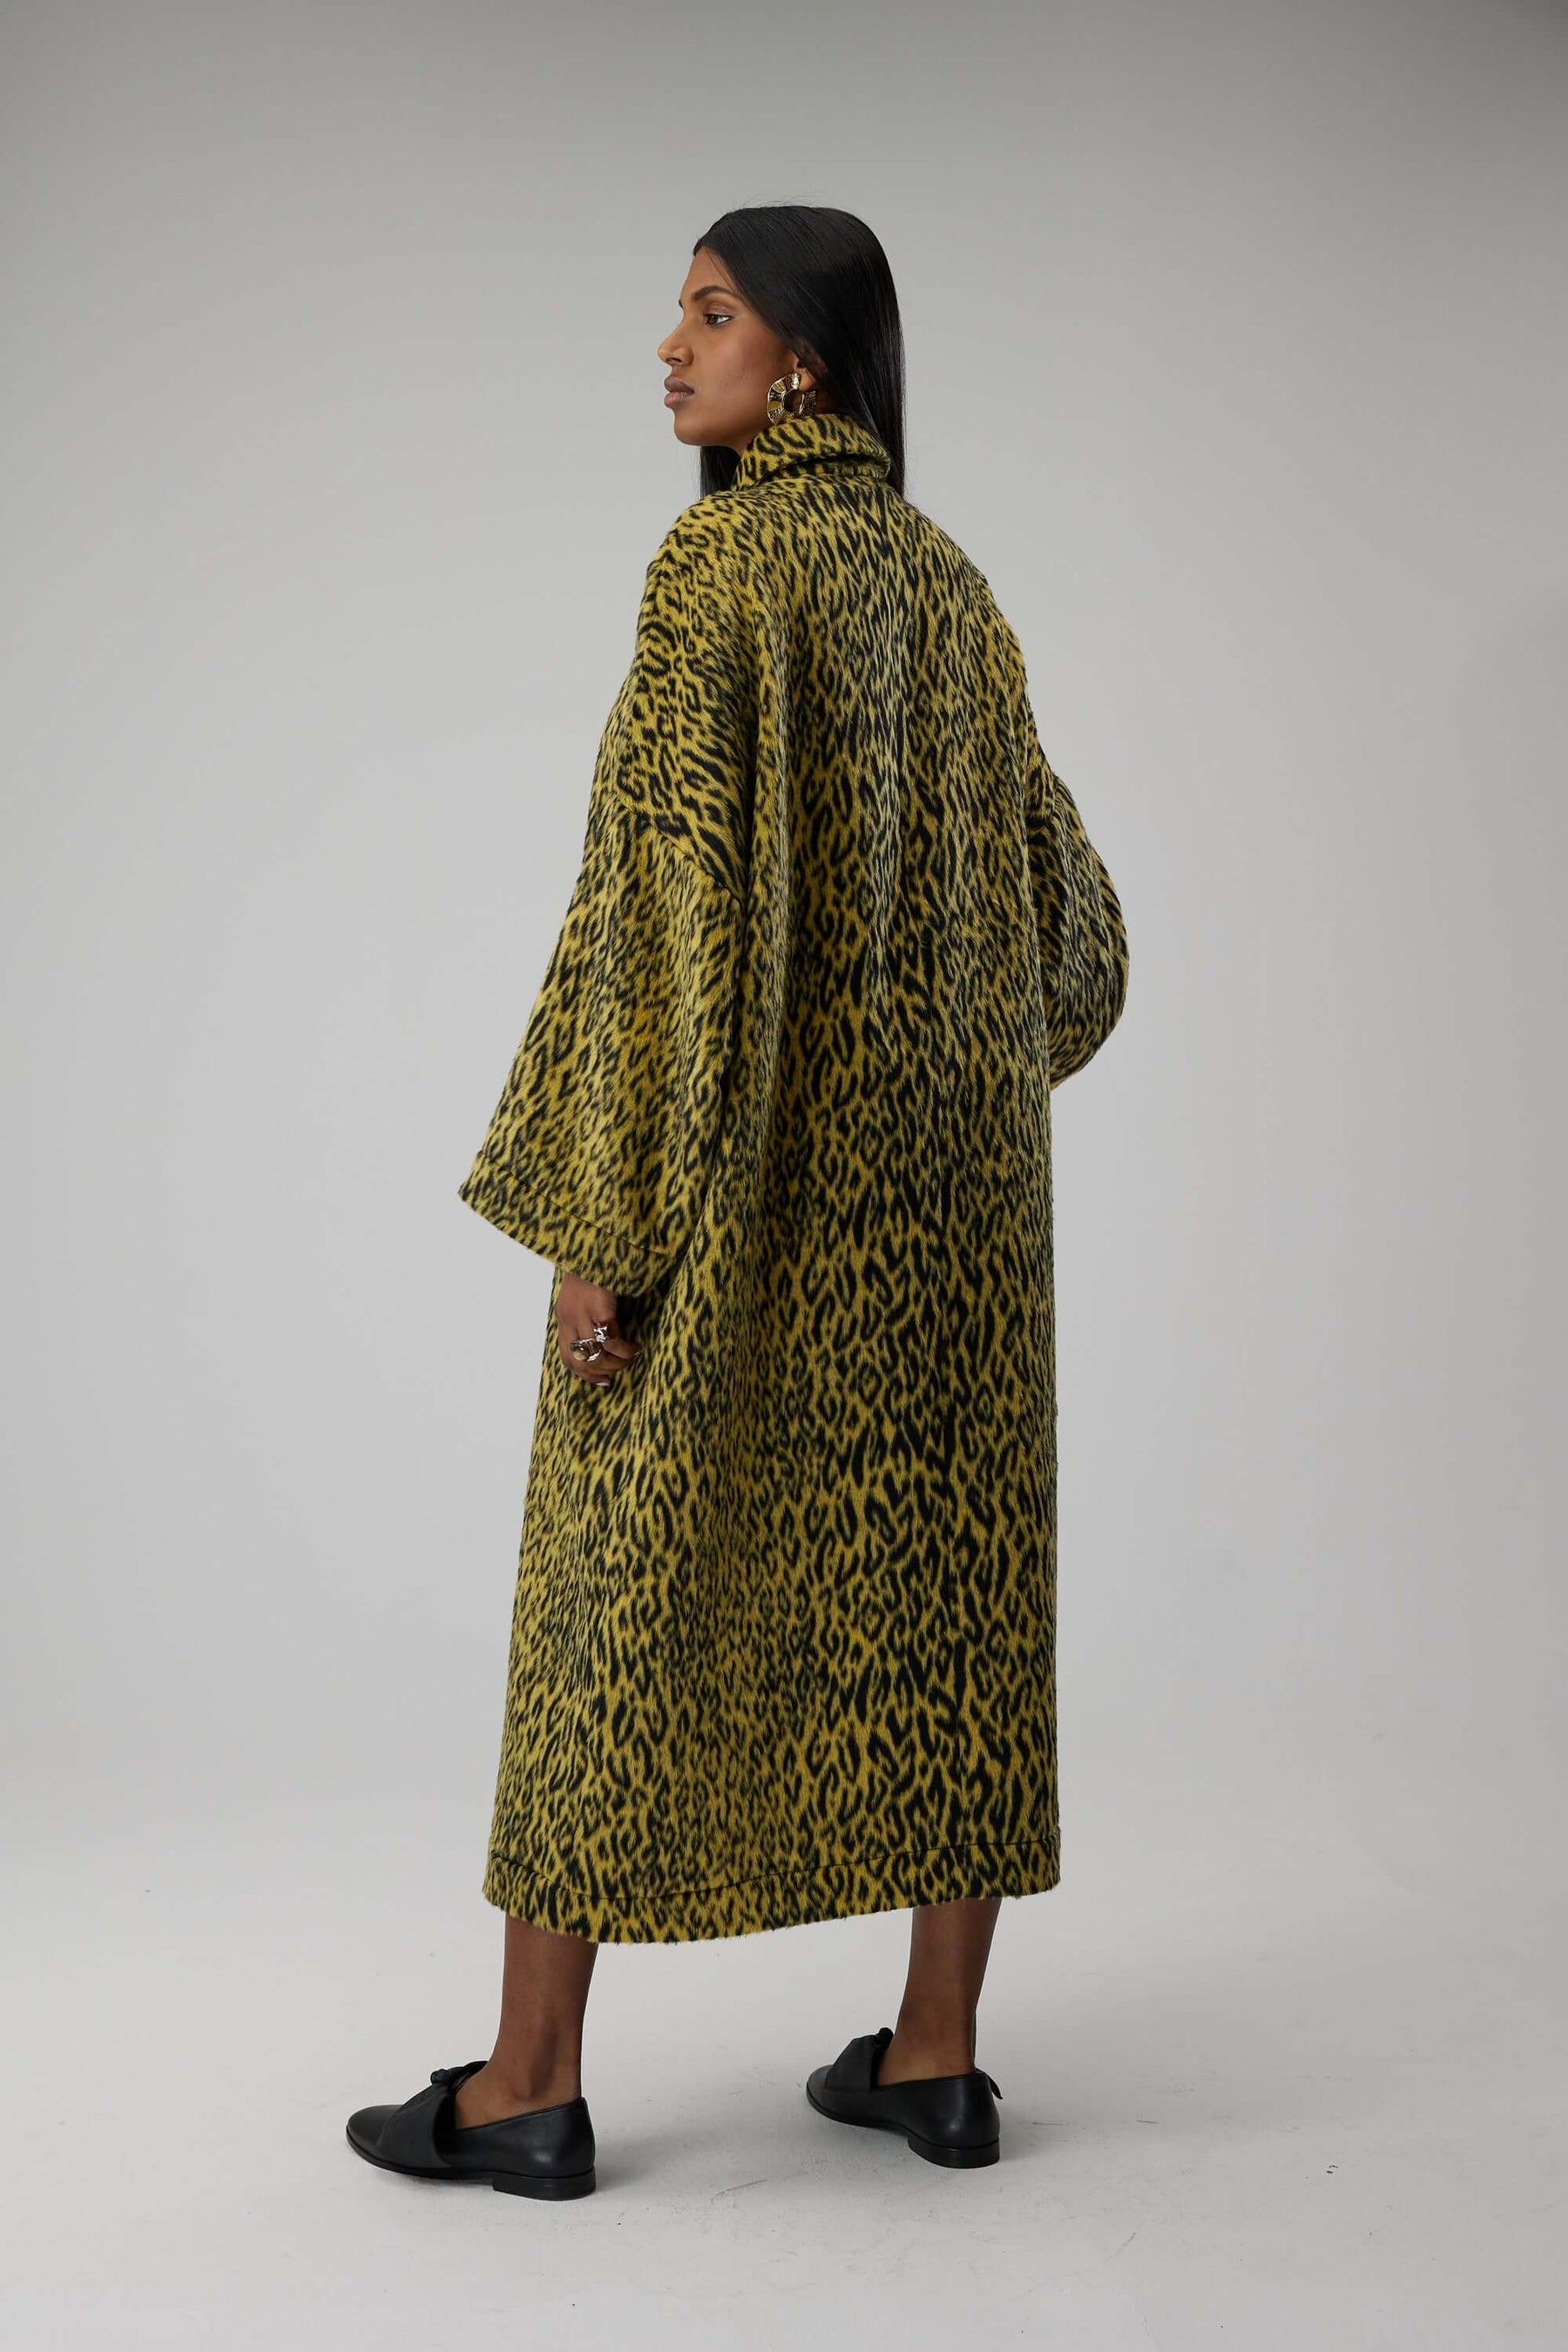 Milo dress in yellow woolen Leopard